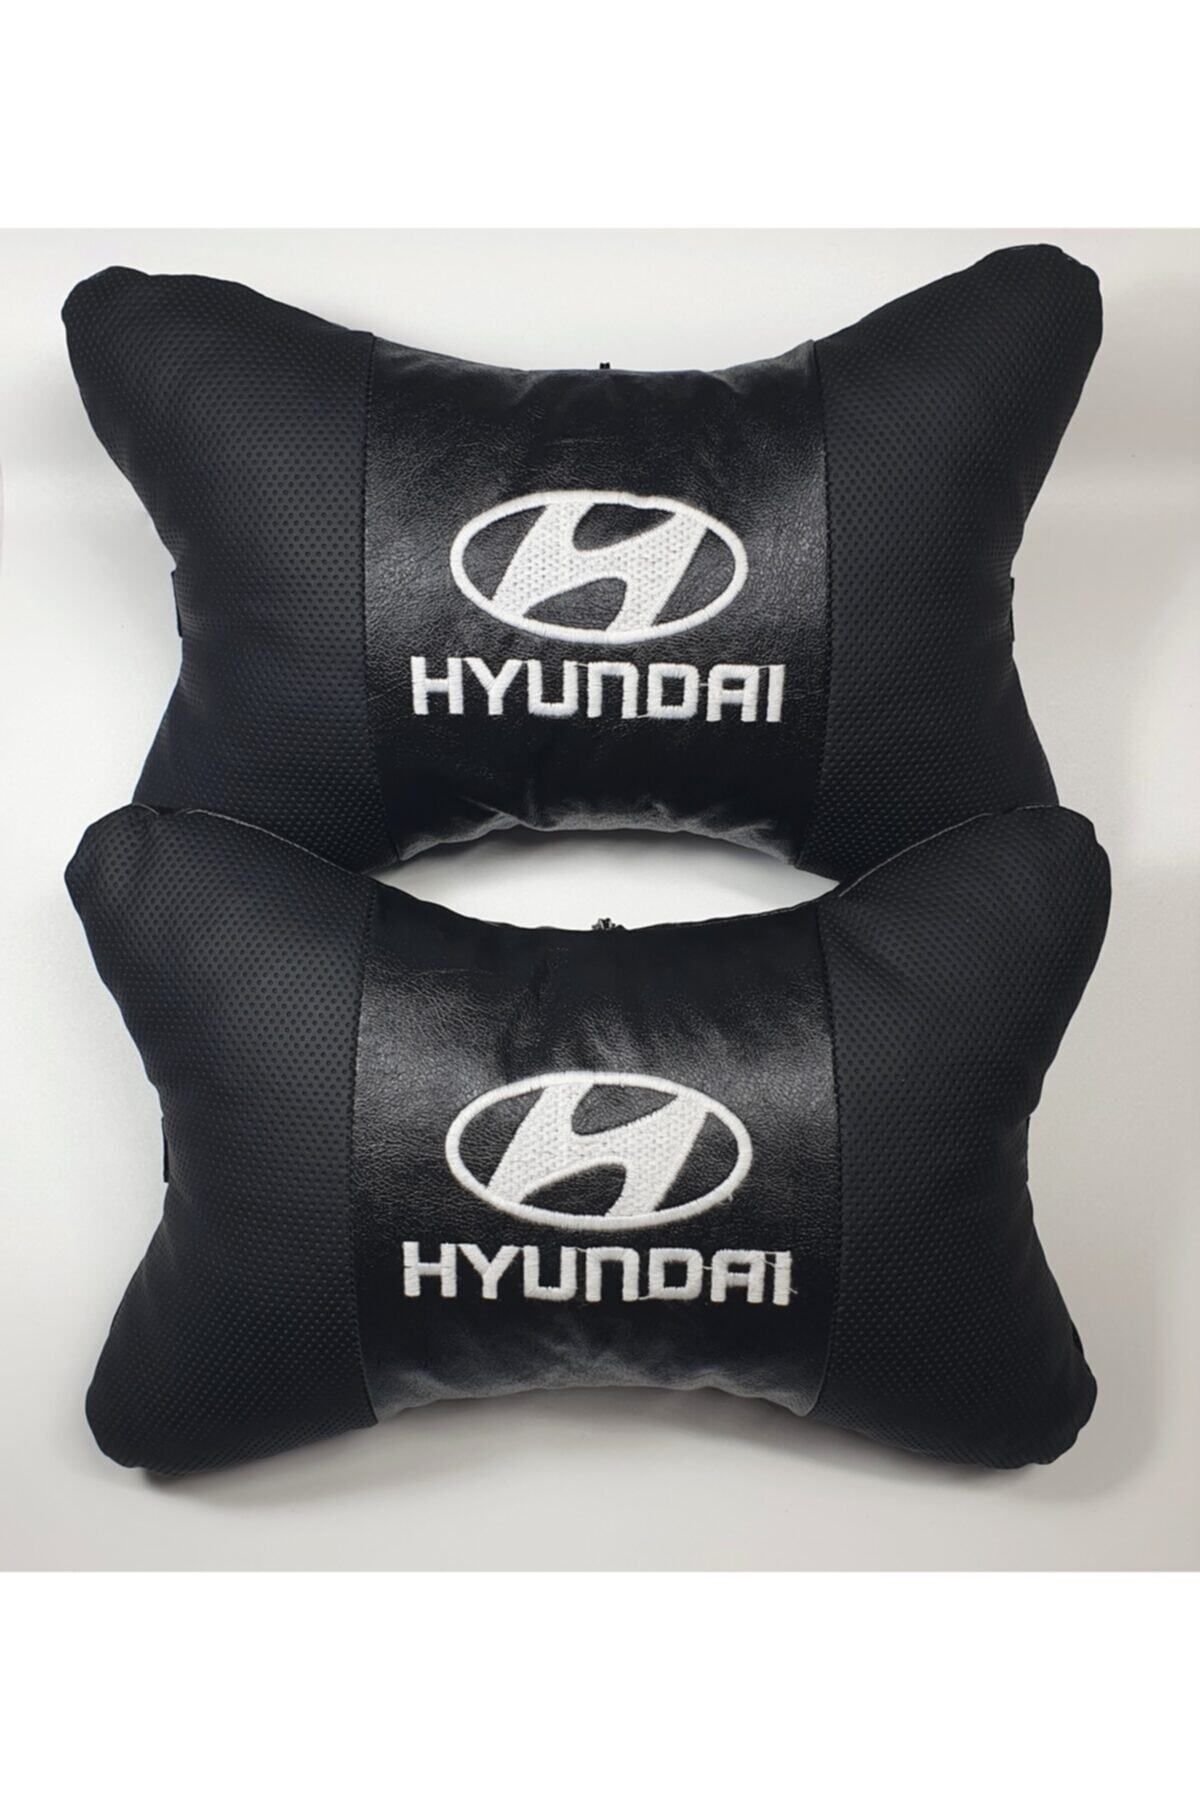 Hyundai Deri Boyun Yastıgı -hyundaı Papyon Yastık - Hyundaı Beyaz Lüks Yastık + Hediye